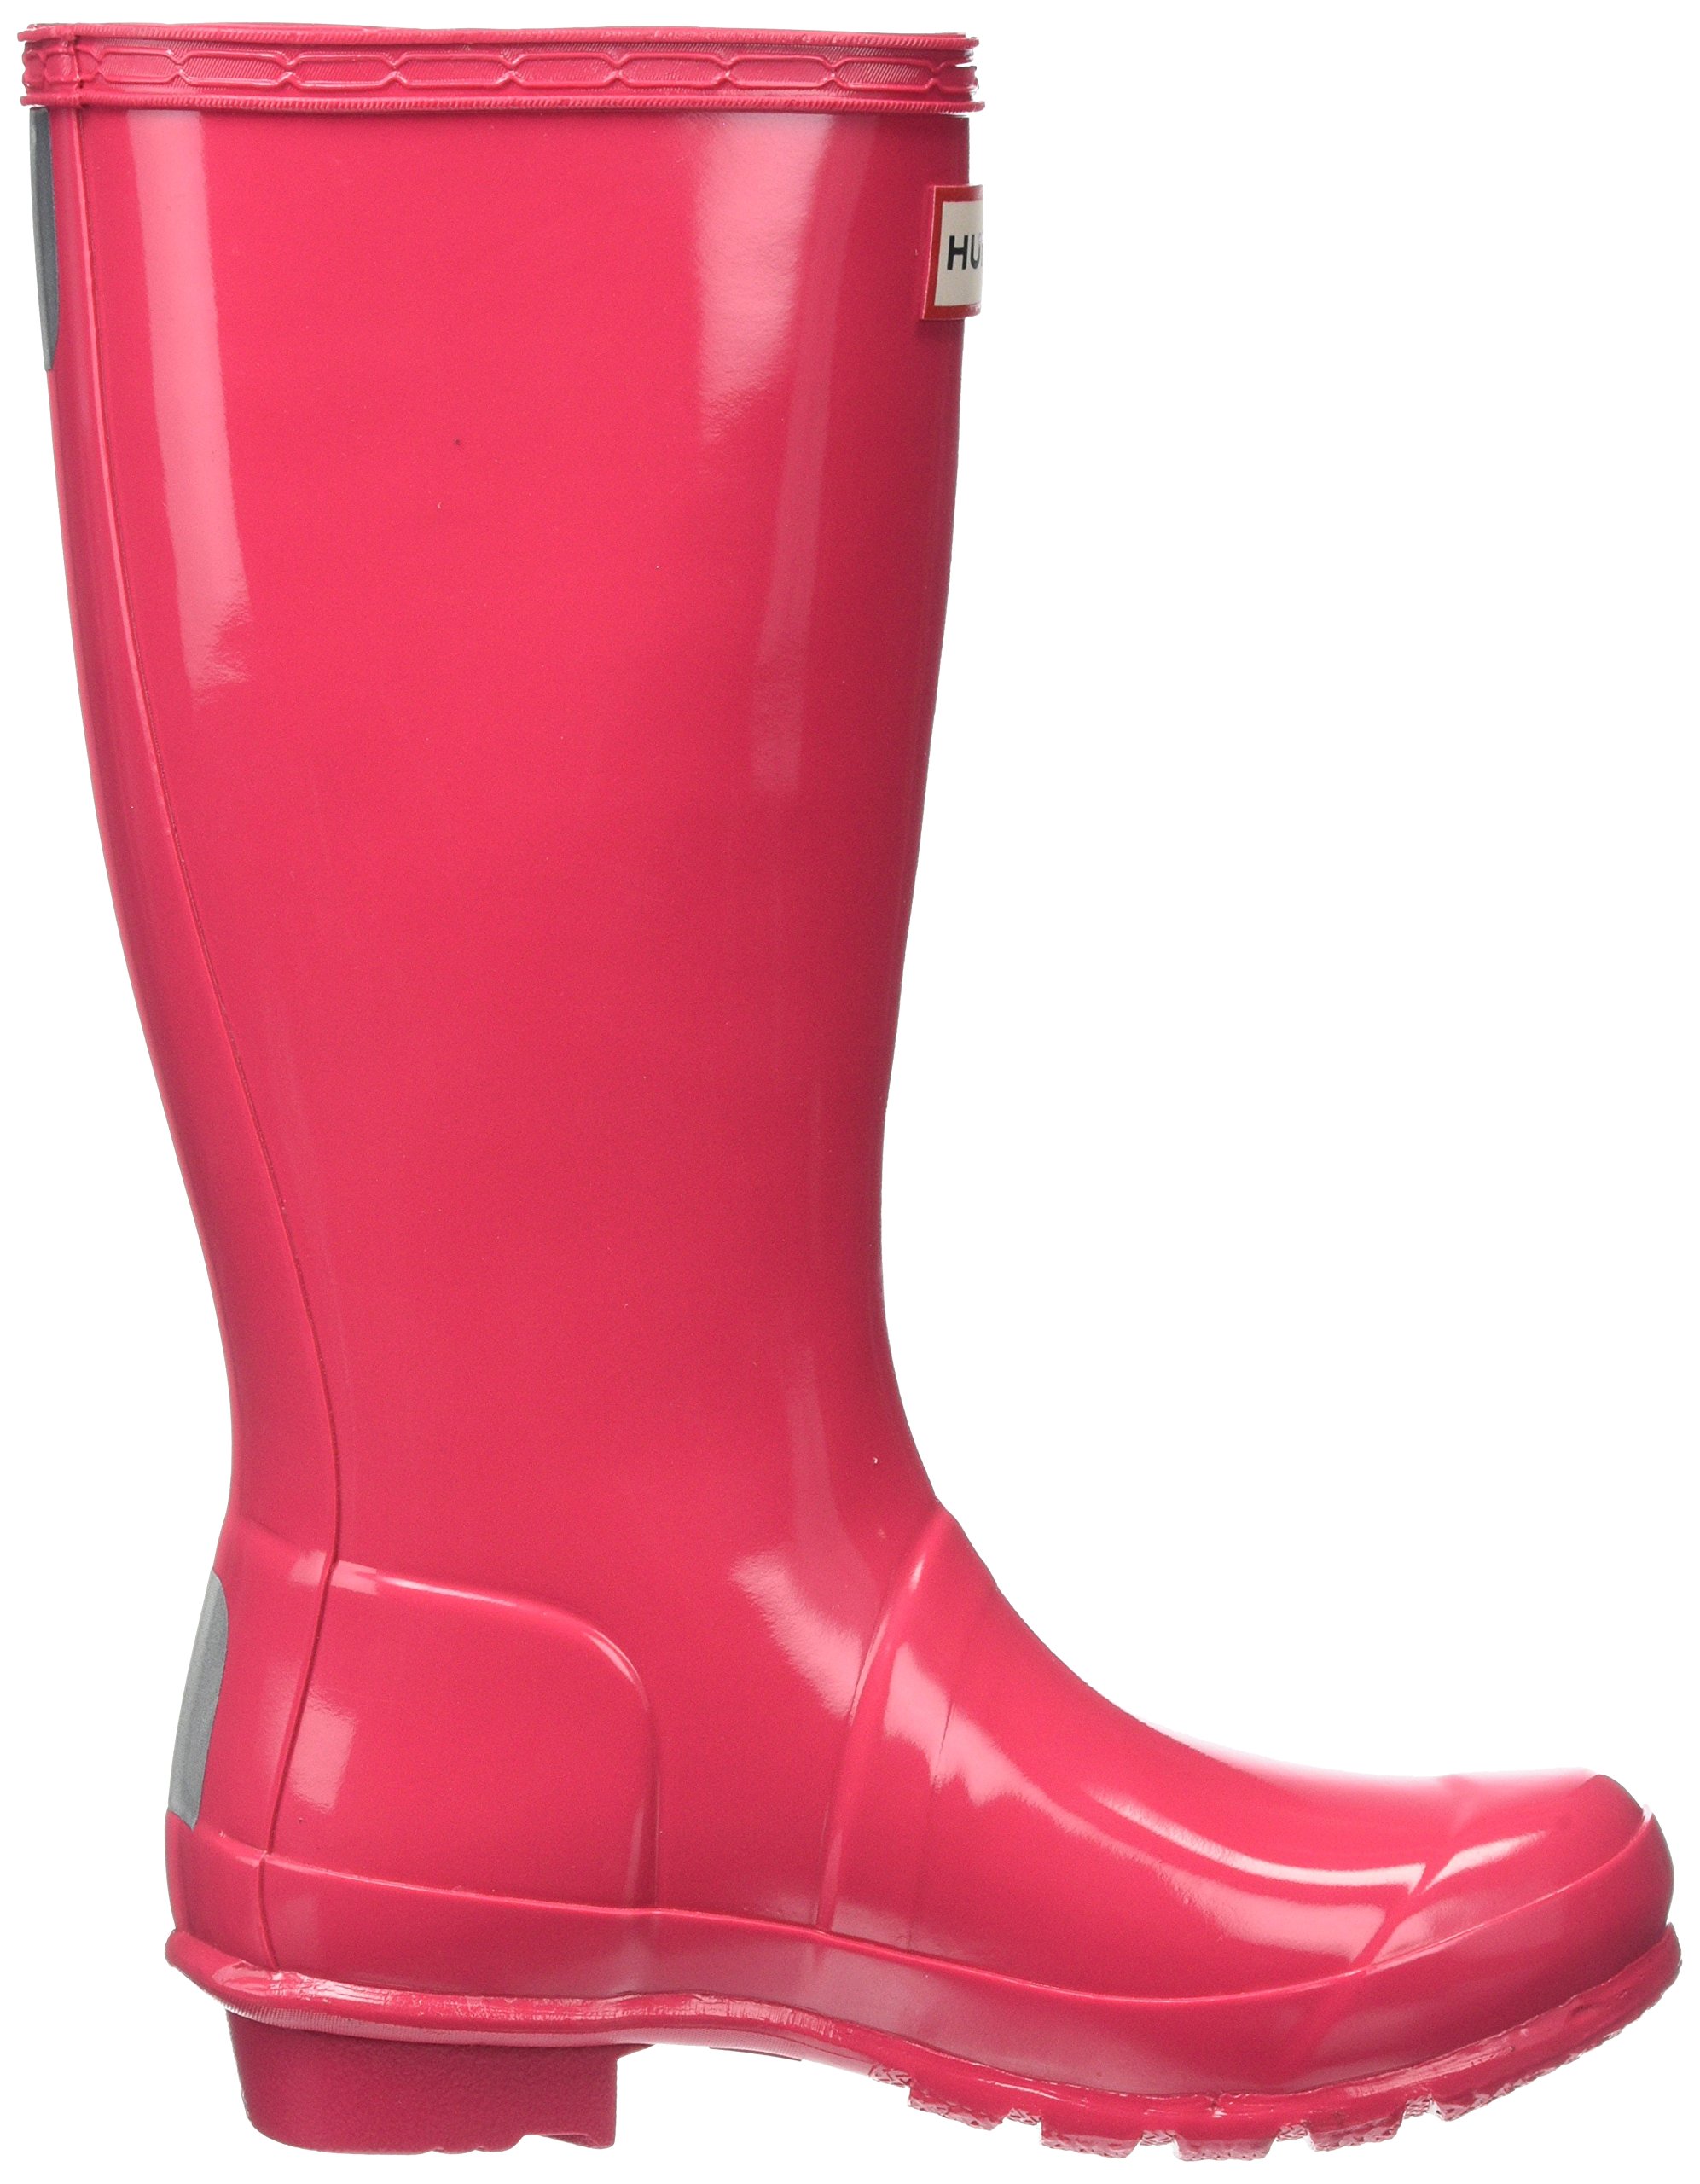 Hunter Kids Unisex Original Kids' Gloss Rain Boot (Little Kid/Big Kid) Bright Pink 5 Big Kid M